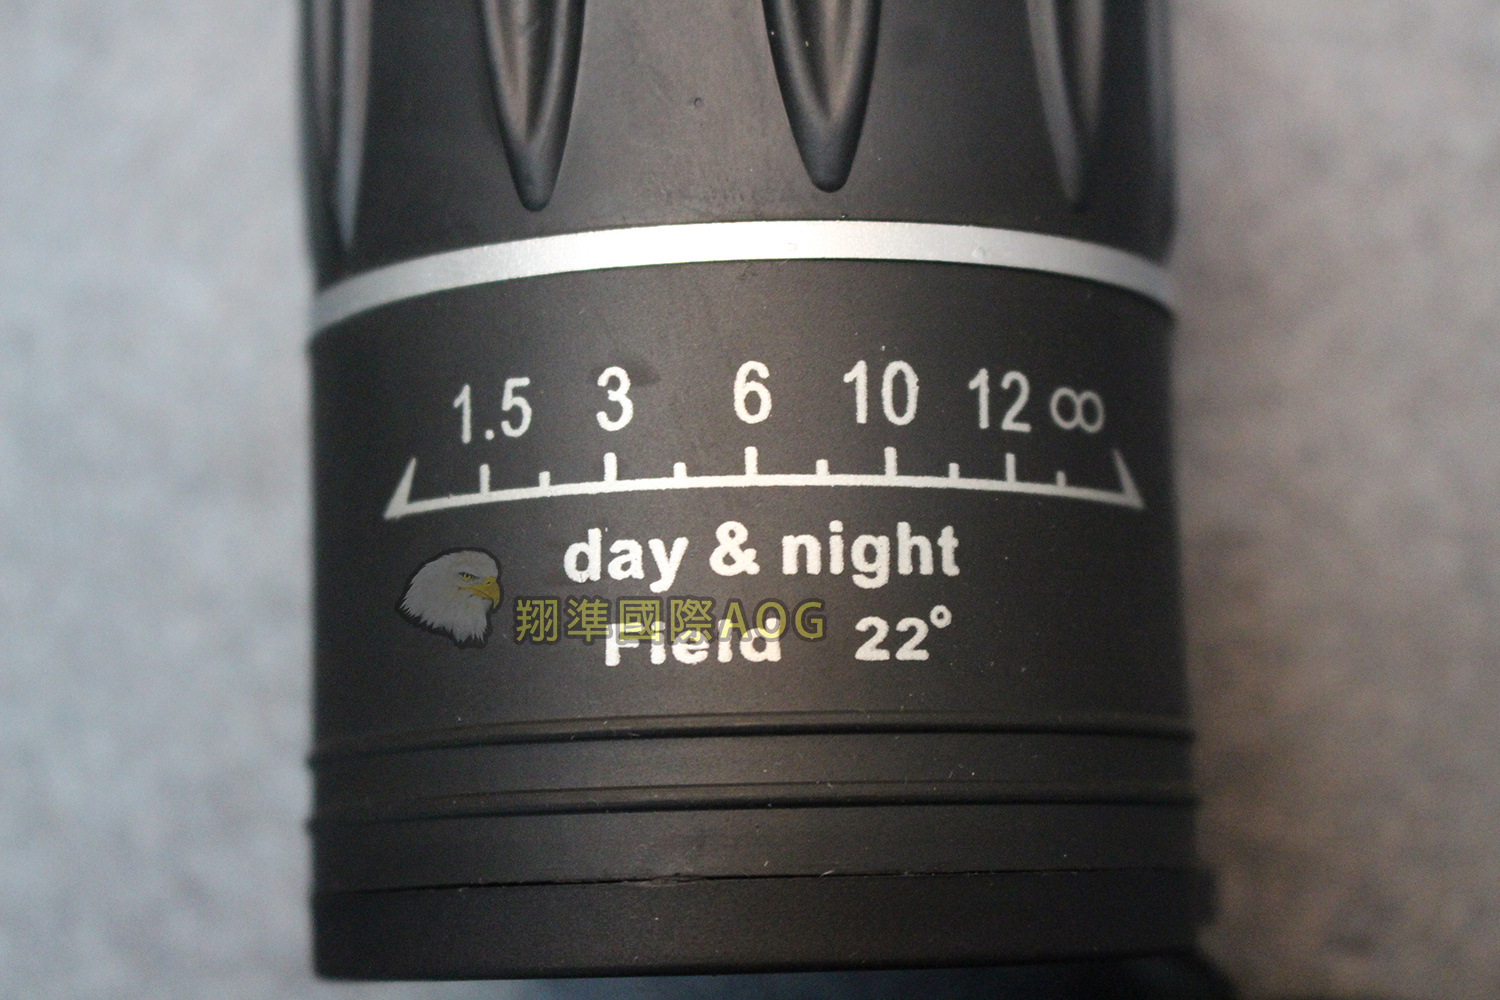 翔準軍品aog M30 52單筒 黑 旋轉伸縮單眼望遠鏡偵查探險清晰觀景演唱會u 001 16n 露天拍賣